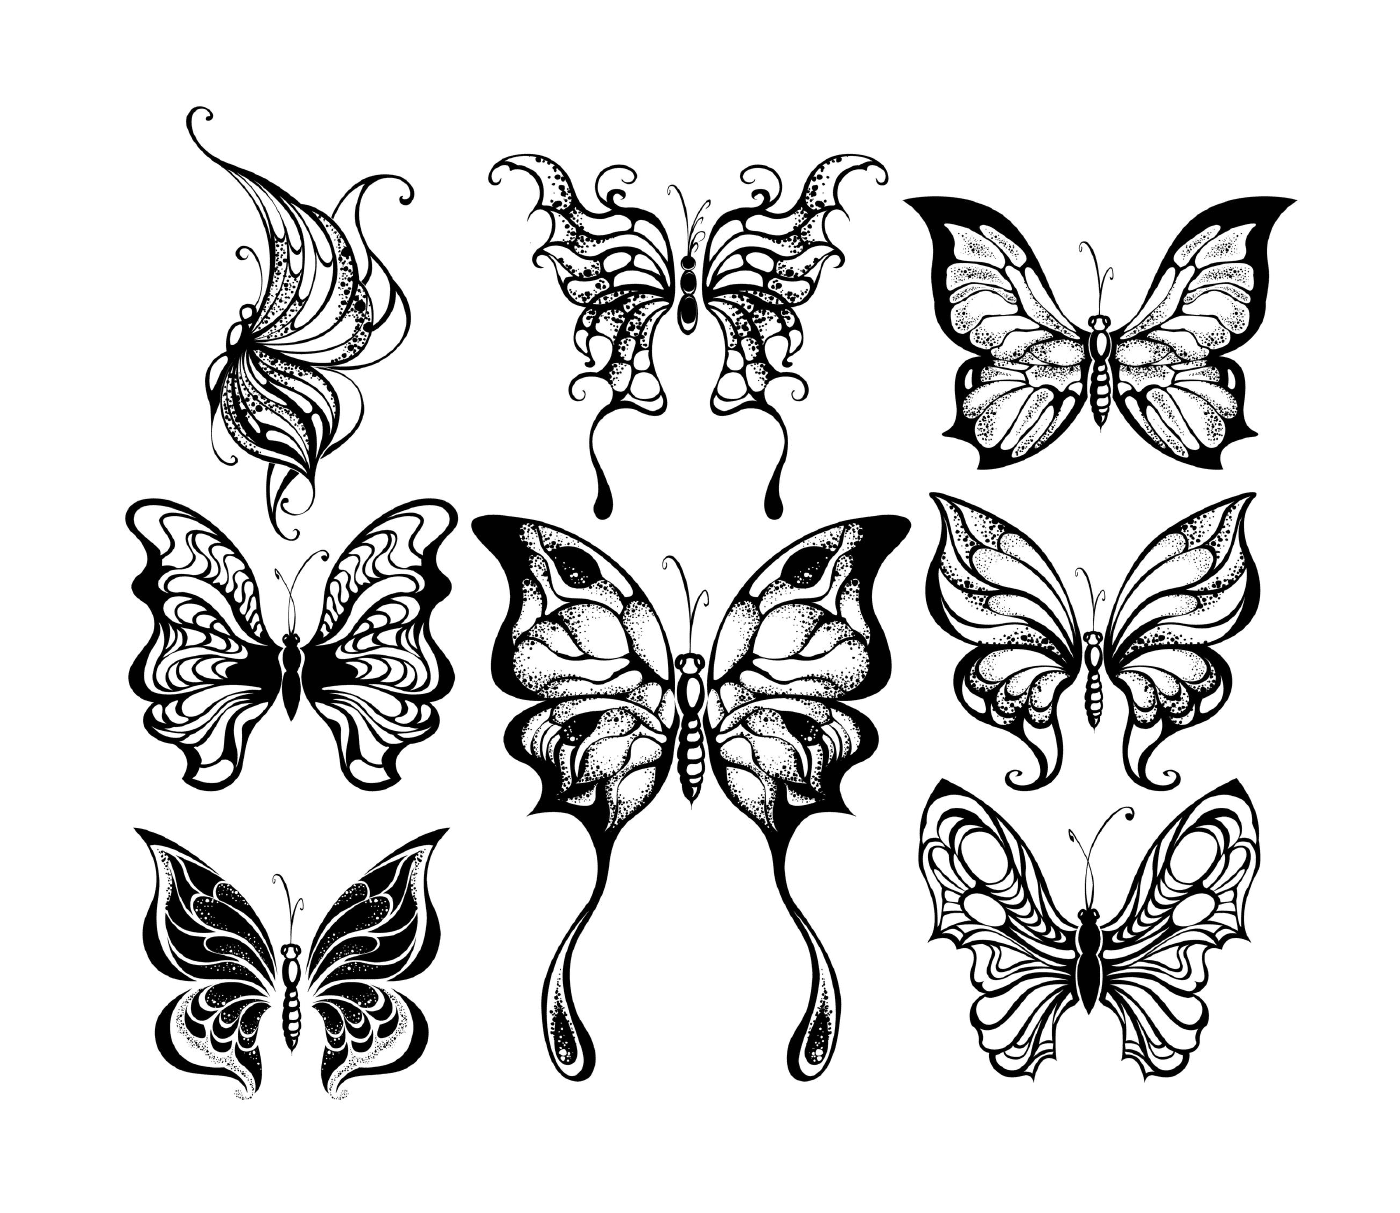  Um conjunto de nove borboletas em preto e branco 